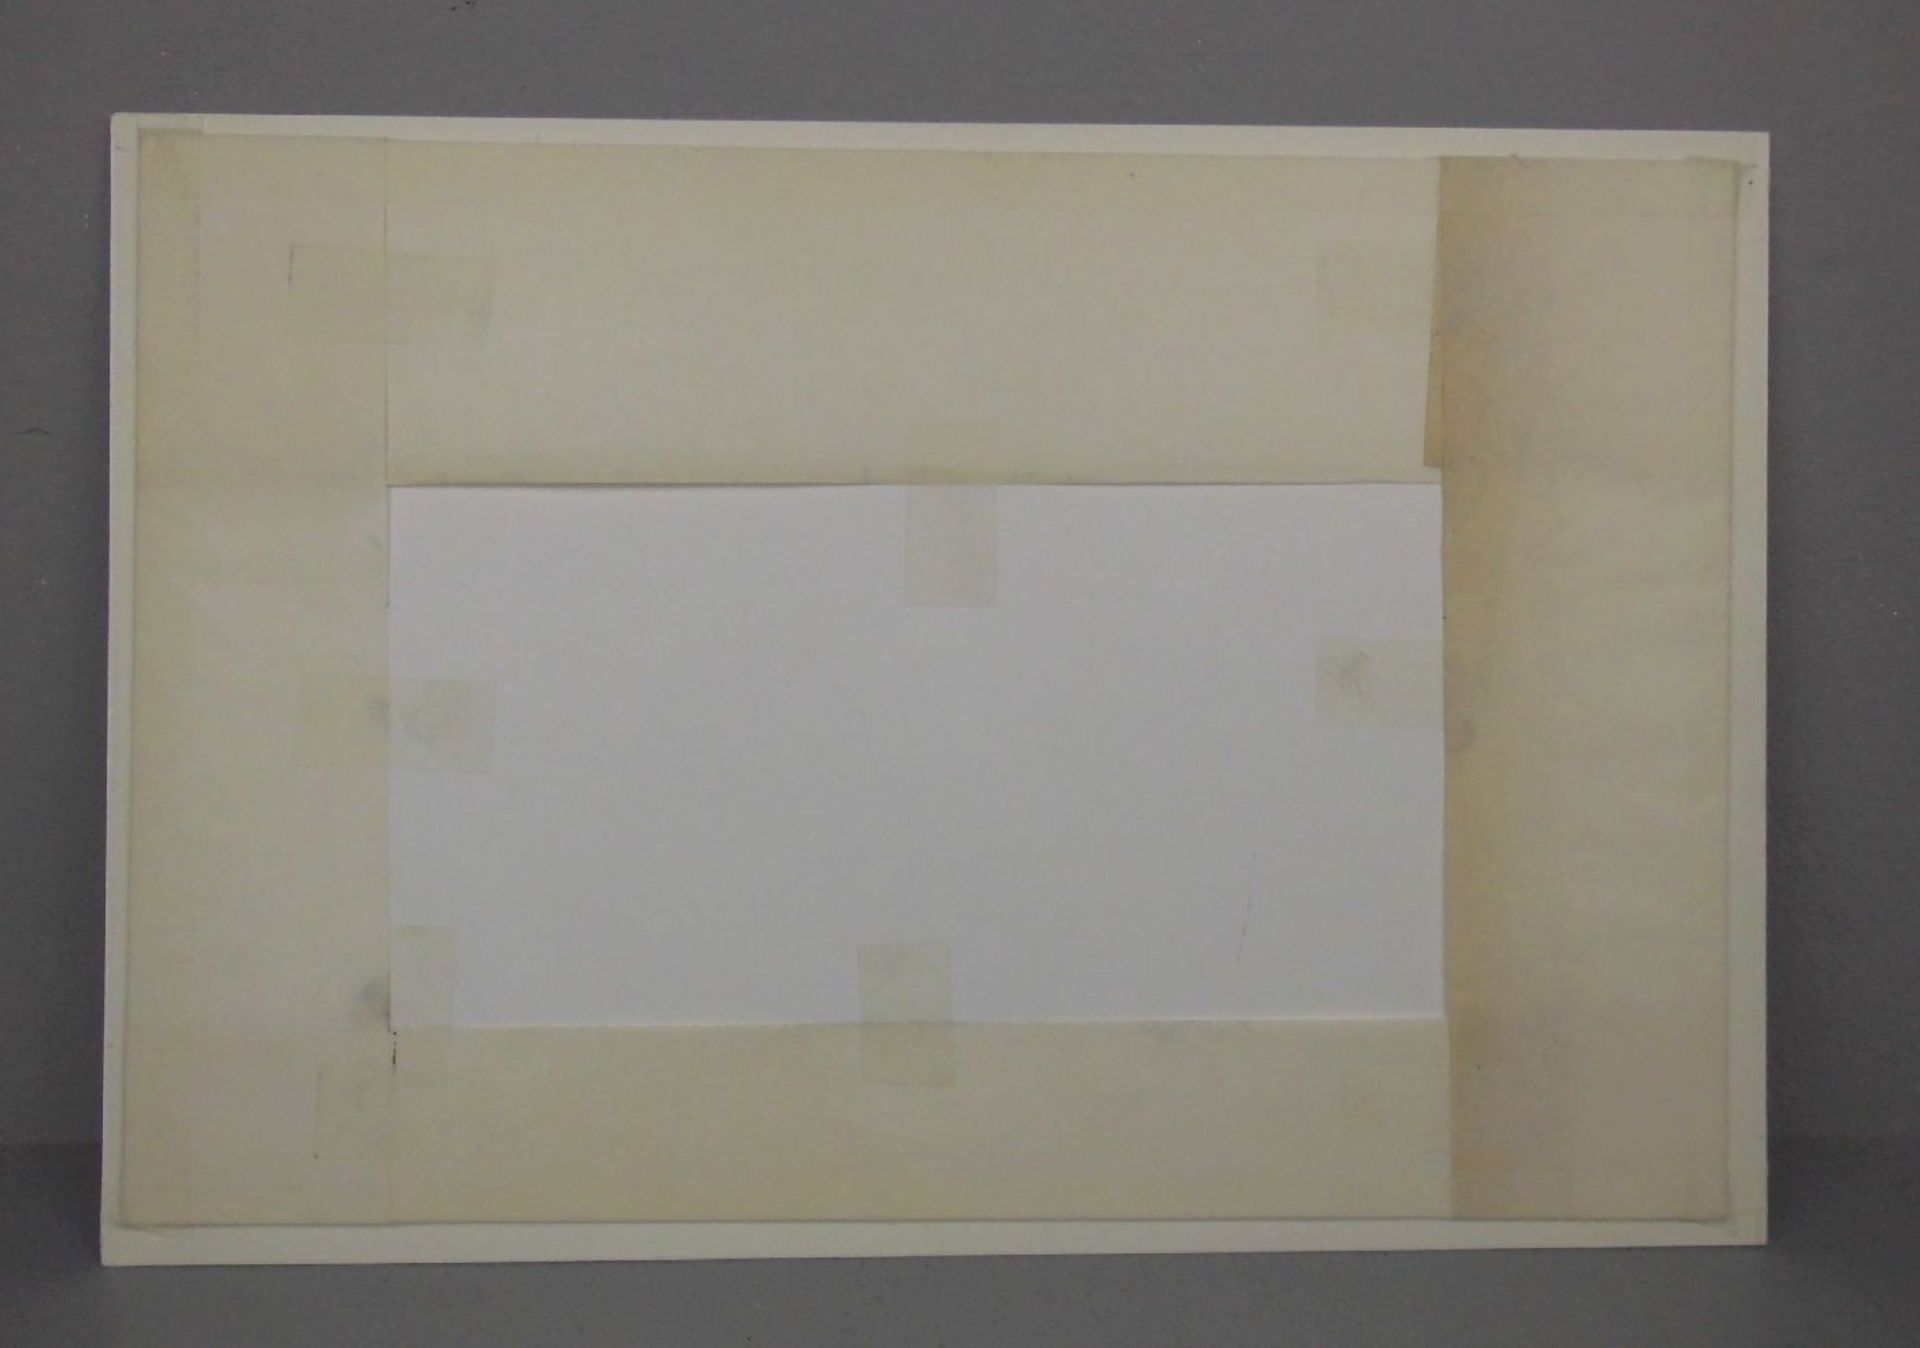 SCHMIDT-ROTTLUFF, KARL (1884-1976), Holzschnitt auf Bütten / woodcut: "Paar", 1909, u. r. - Image 5 of 9